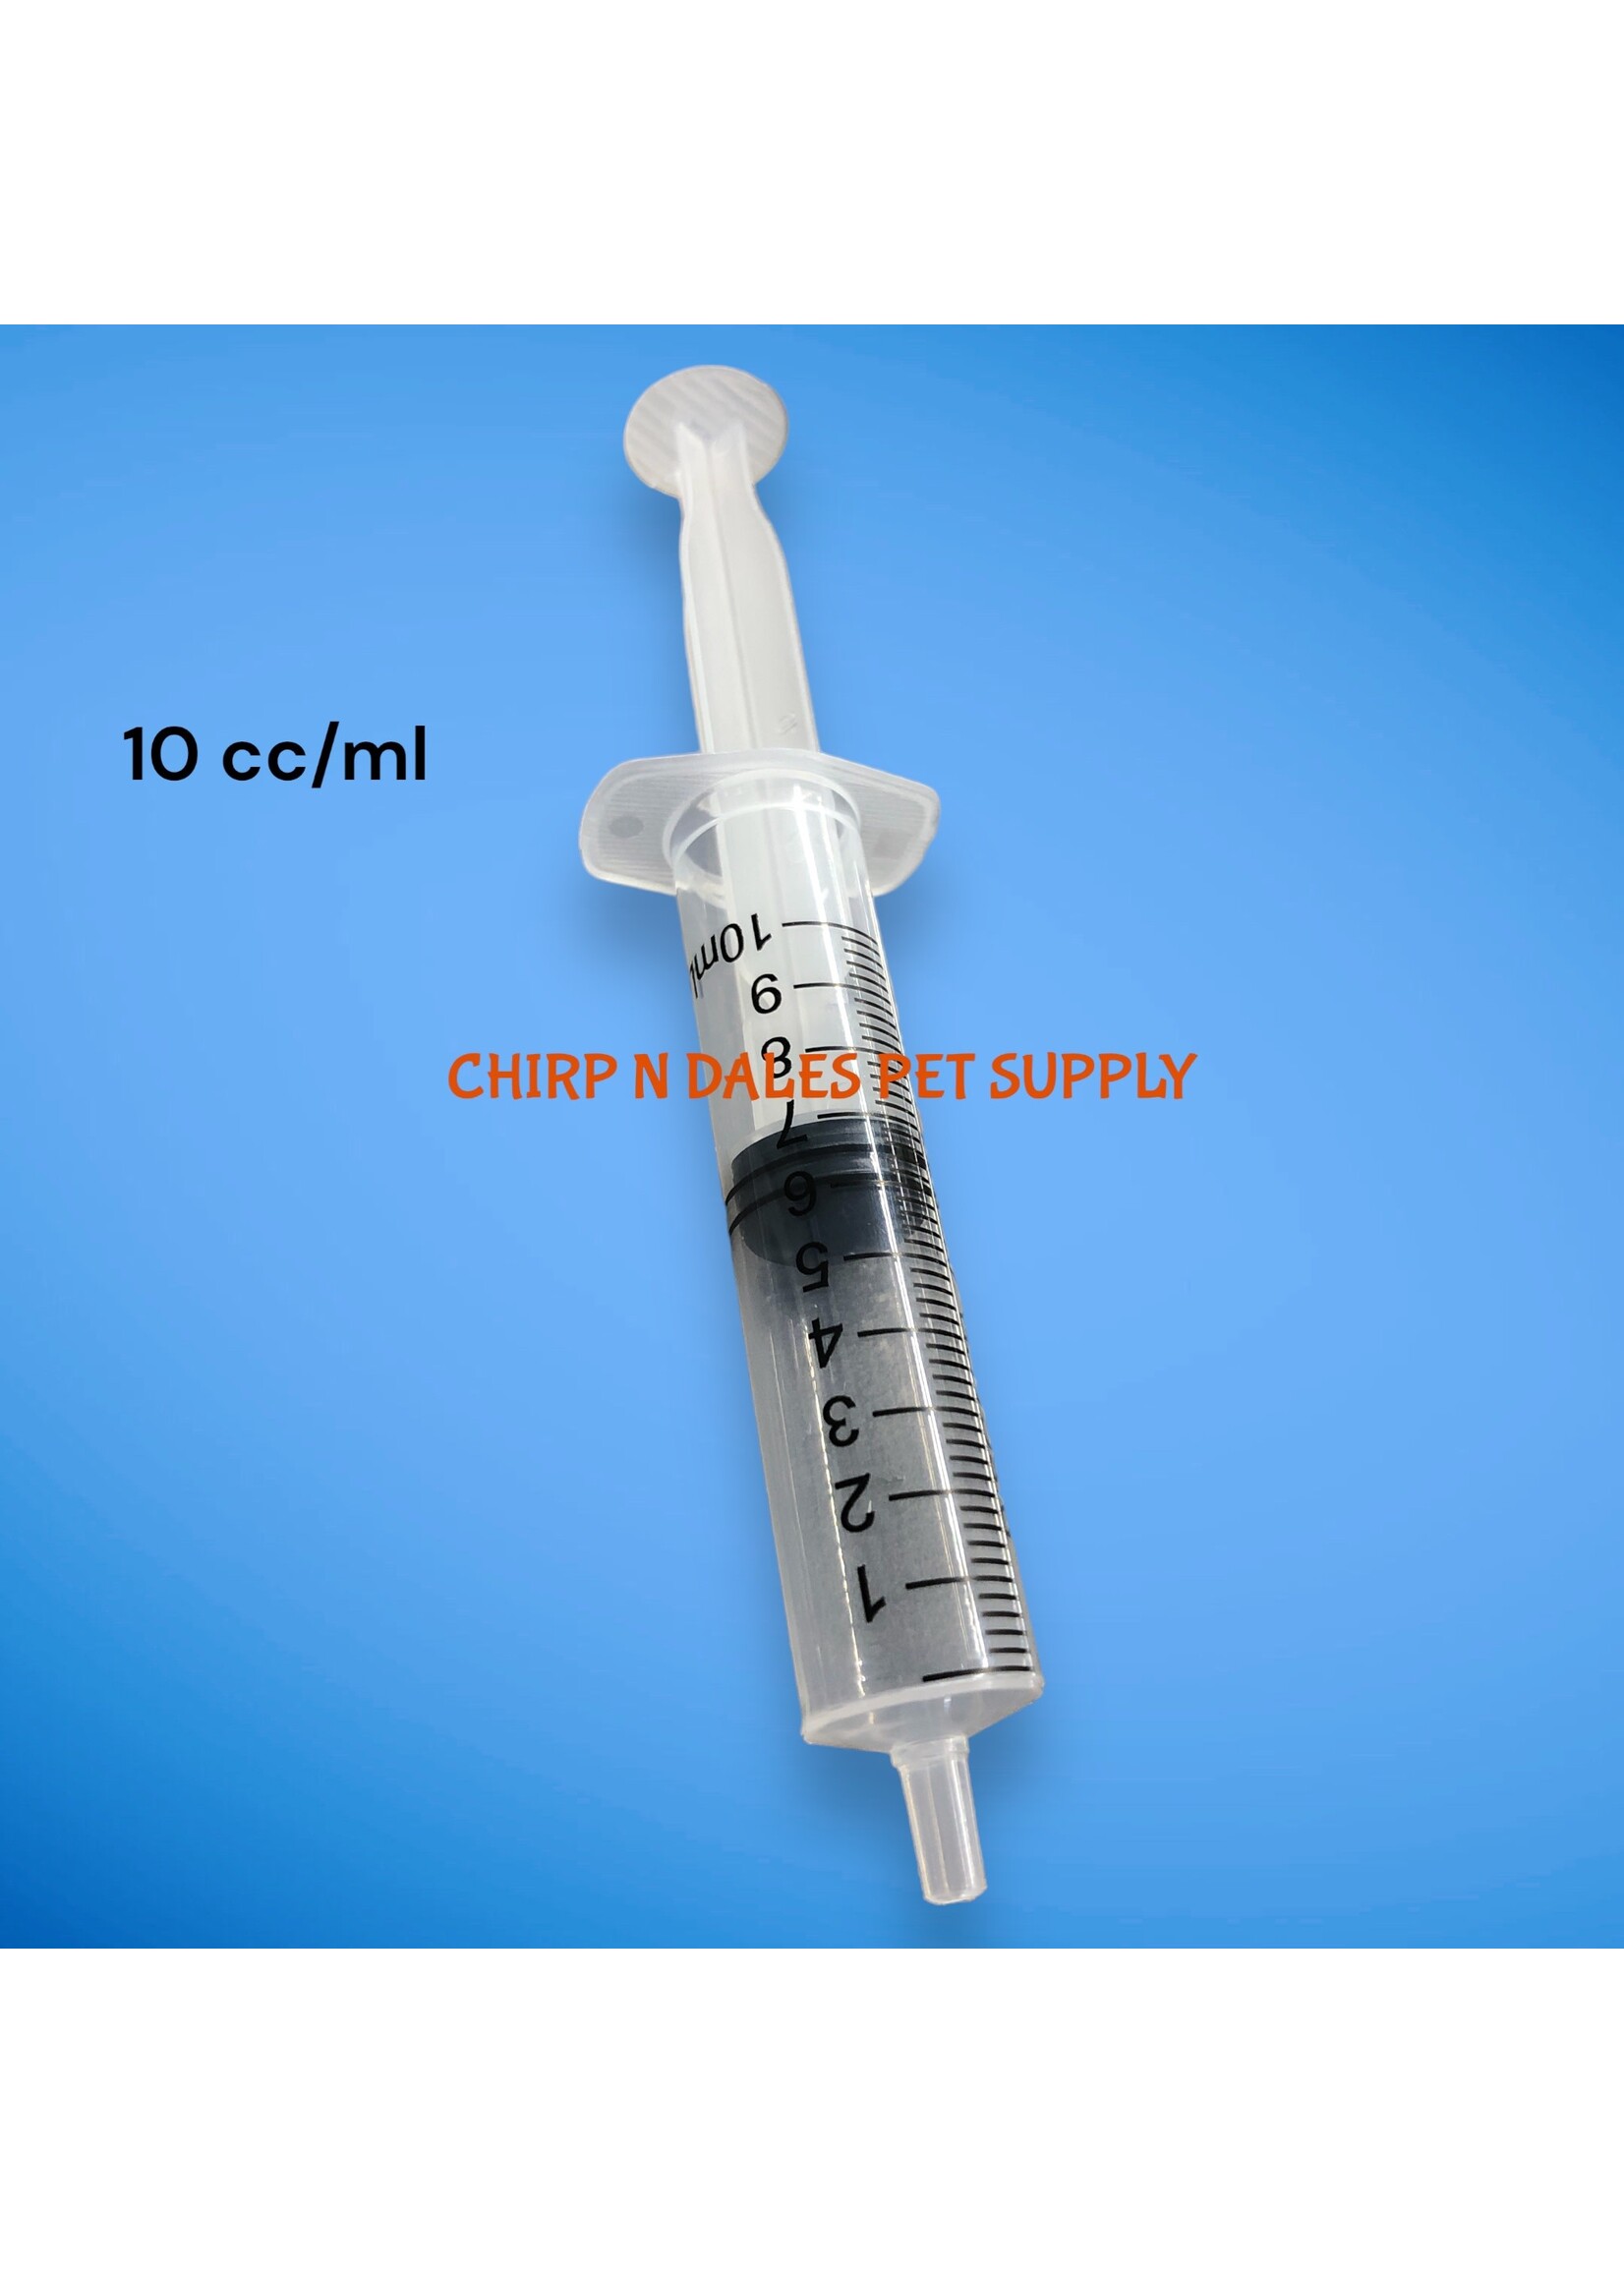 Syringe 10 cc/ml (1 unit)